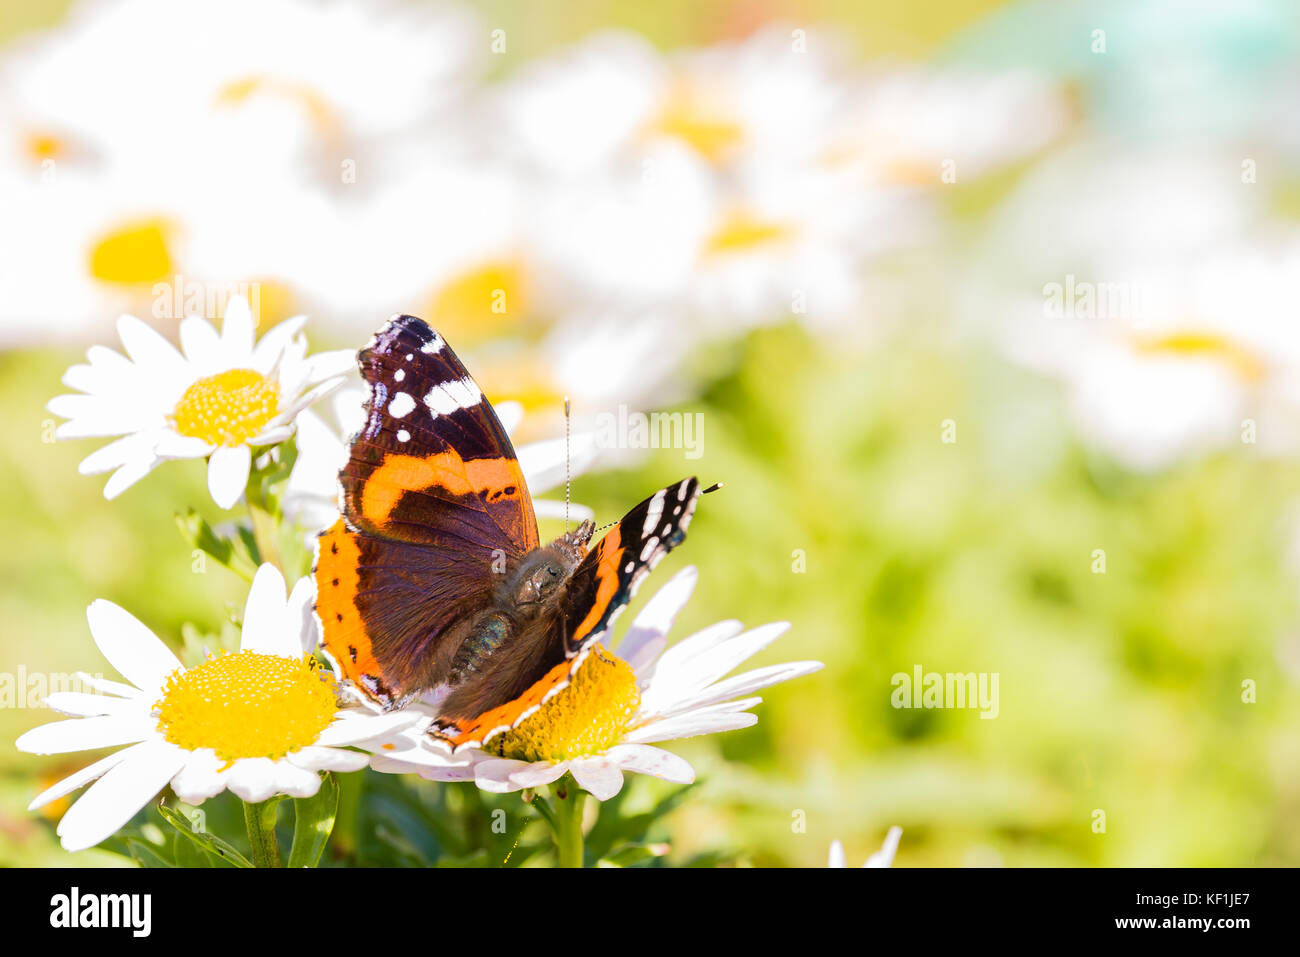 Horizontale Foto von Admiral Schmetterling mit schönen Flügel mit dunklen Schwarz, orangen und weißen Farben und behaarte Körper. Insekt auf White Daisy bloom w thront Stockfoto